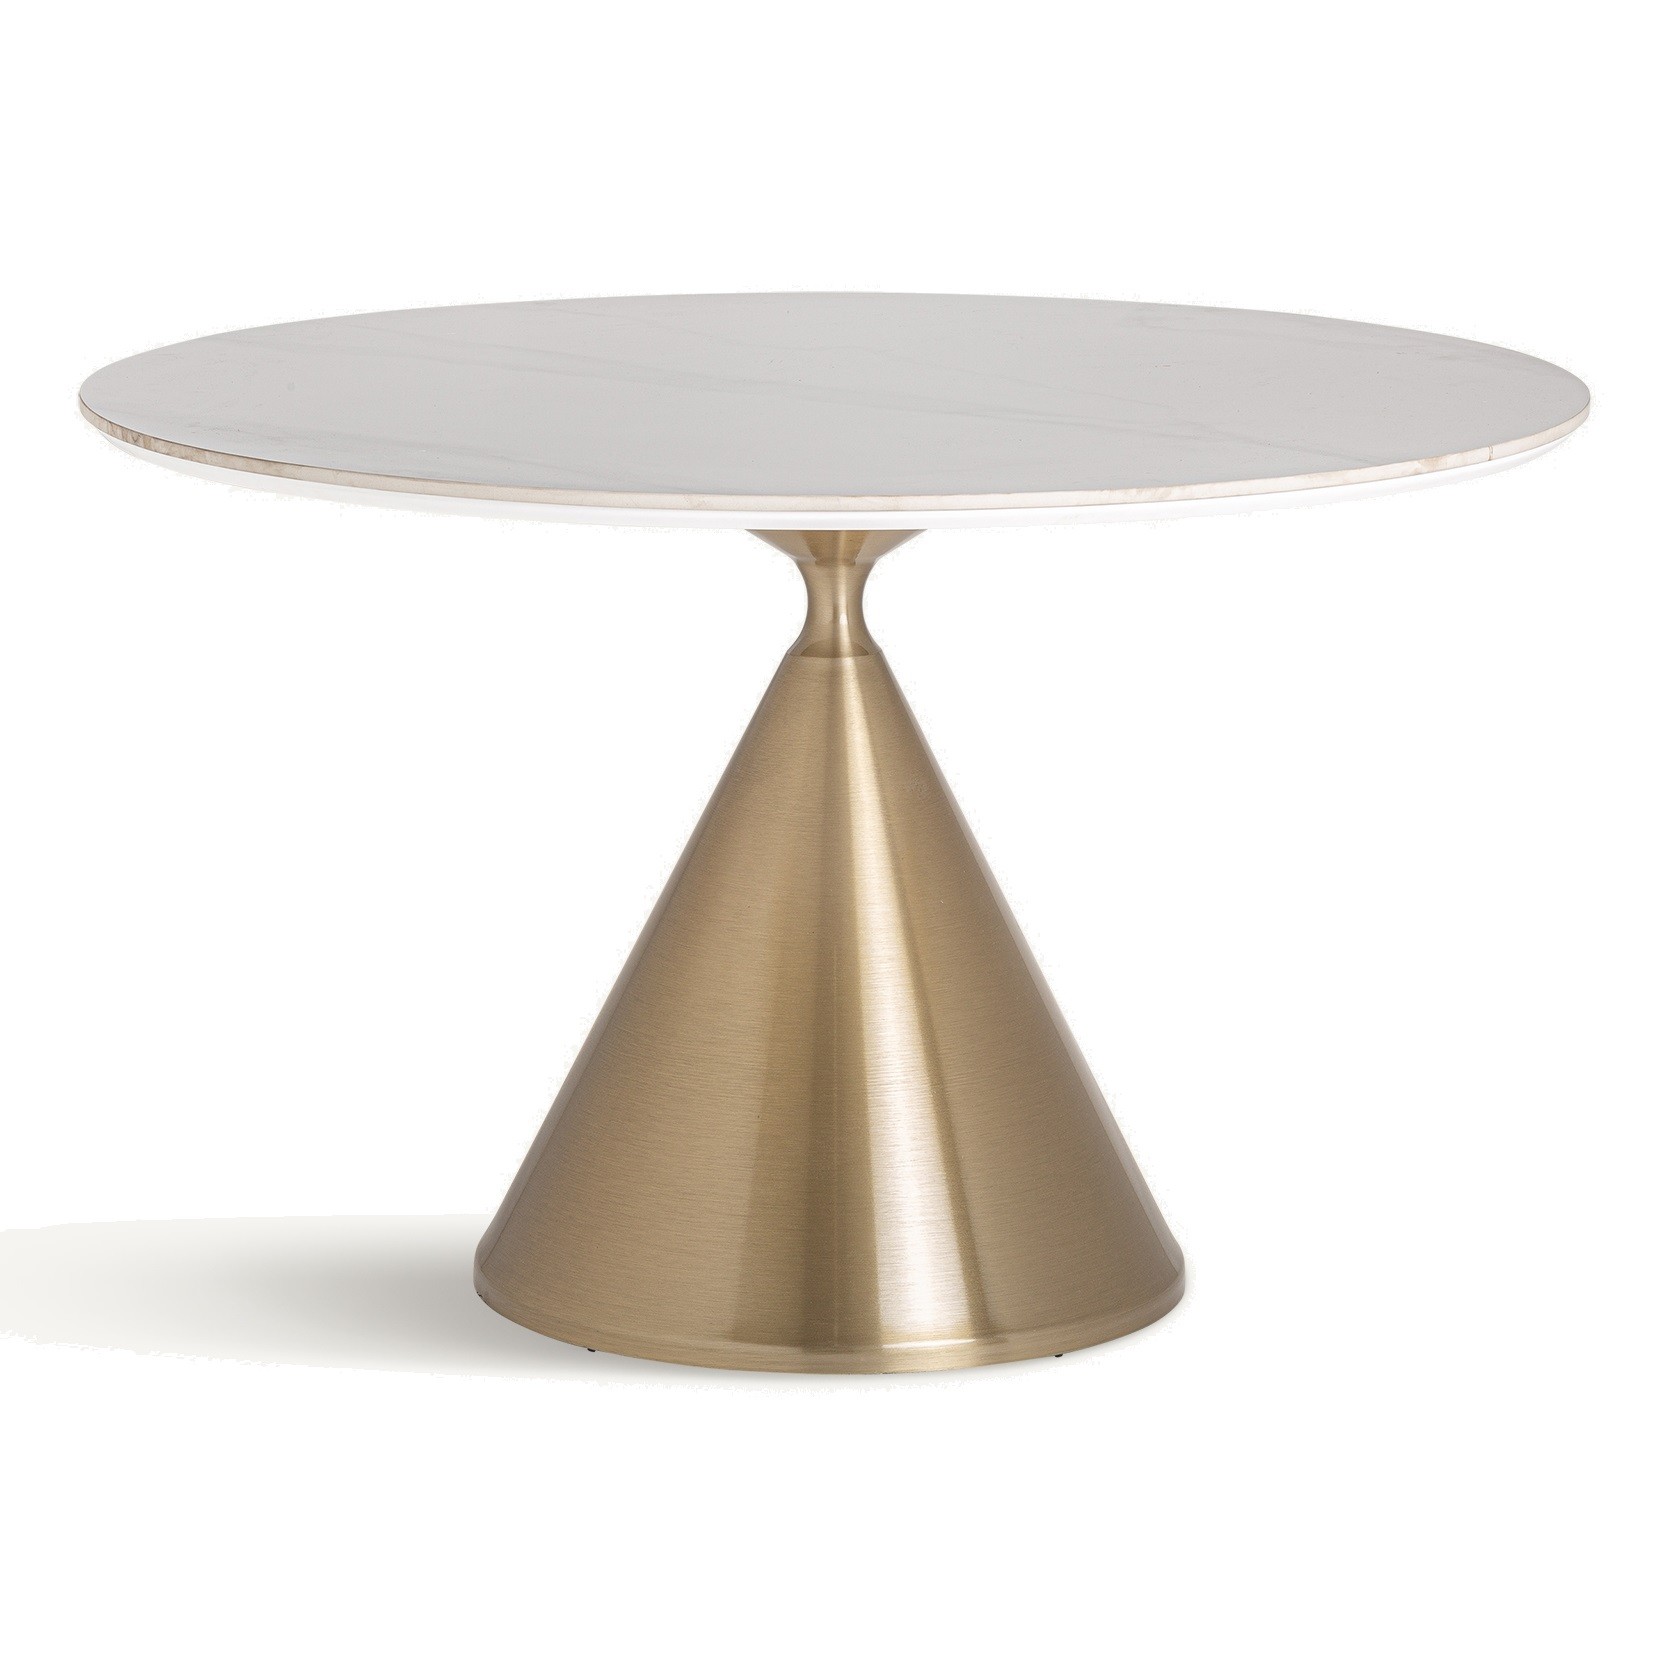 Estila Luxusný art deco biely okrúhly jedálenský stôl Cronos s kamennou vrchnou doskou a zlatou nohou 120 cm